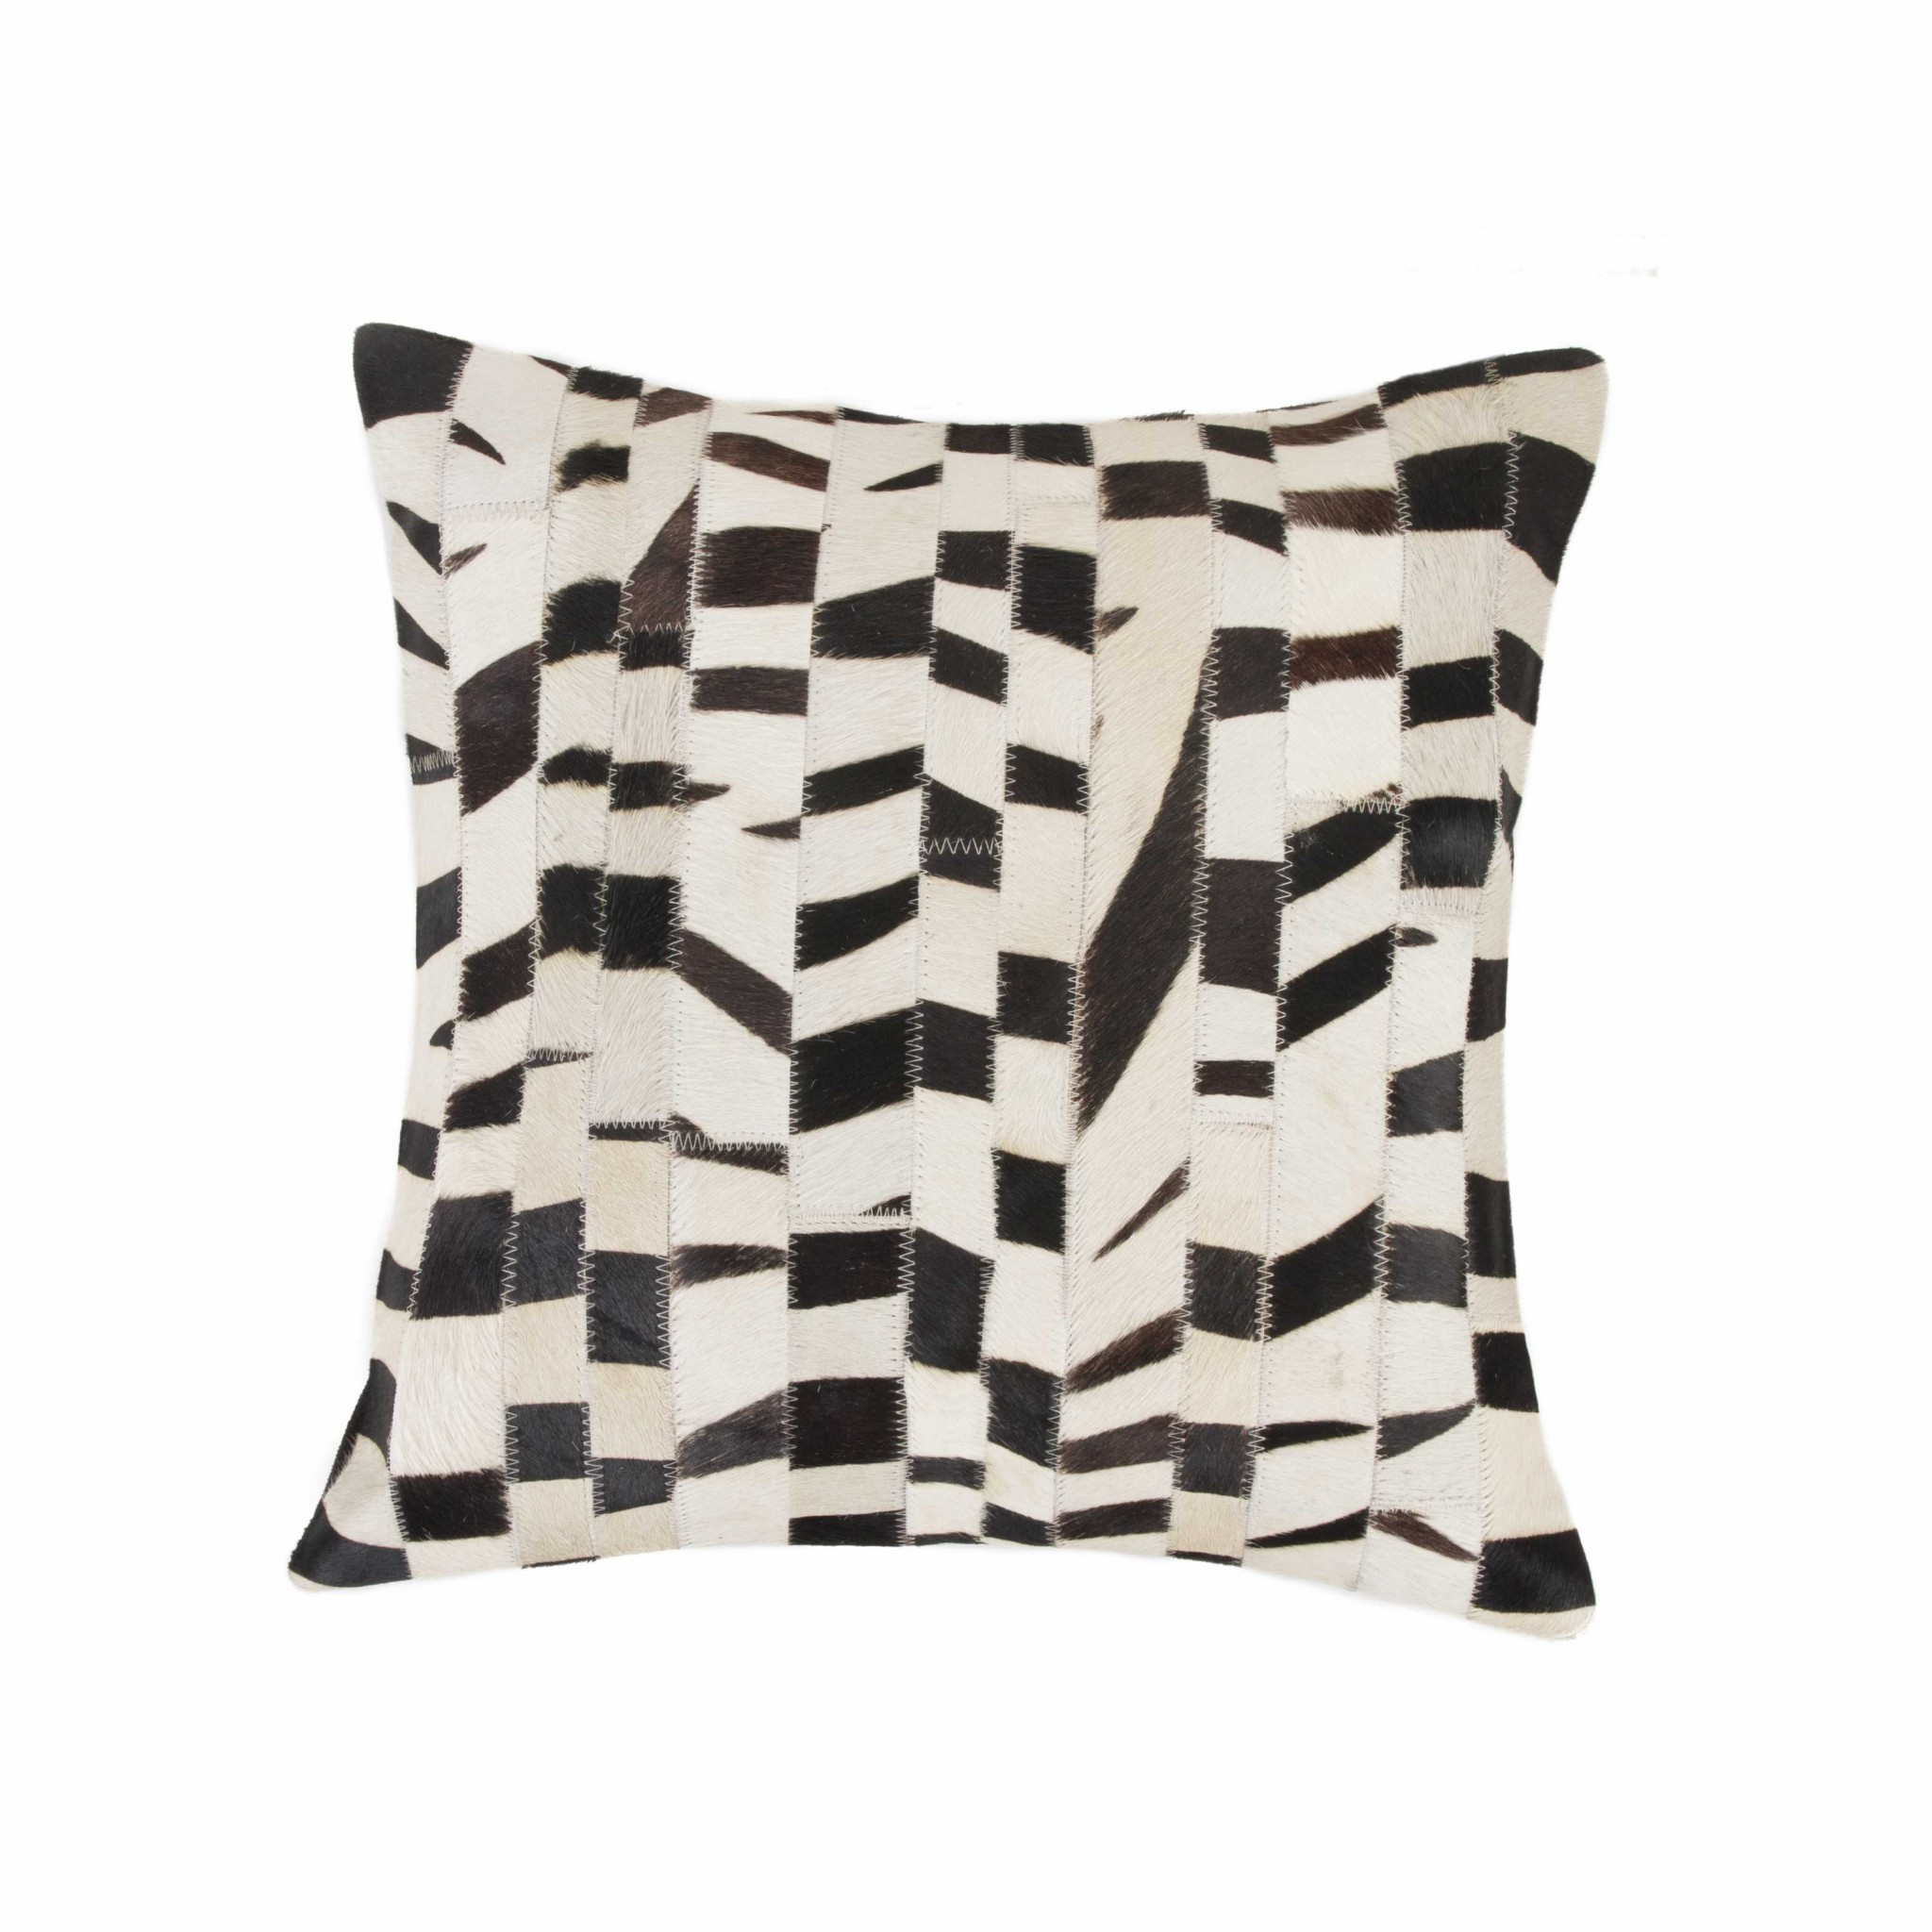 18" x 18" x 5" Zebra - Pillow